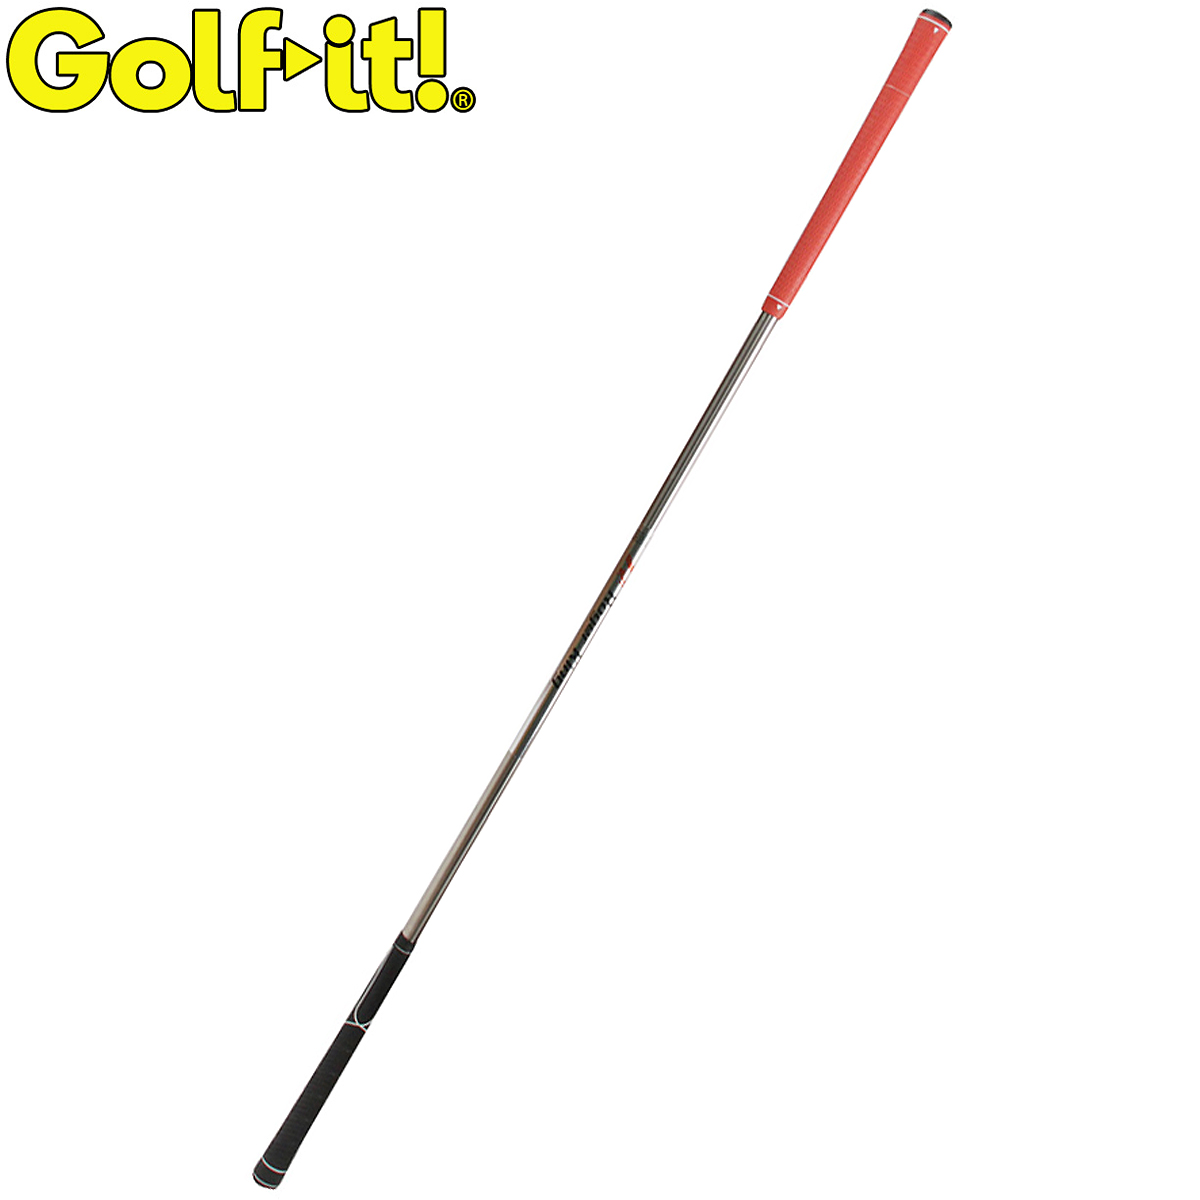 お求めやすく価格改定 オリジナル パワーアップとヘッドスピードアップ Golfit ゴルフイット LiTE ライト 日本正規品 ゴルフスイング練習用品 M-255 II メガパワーヒッター メンズ